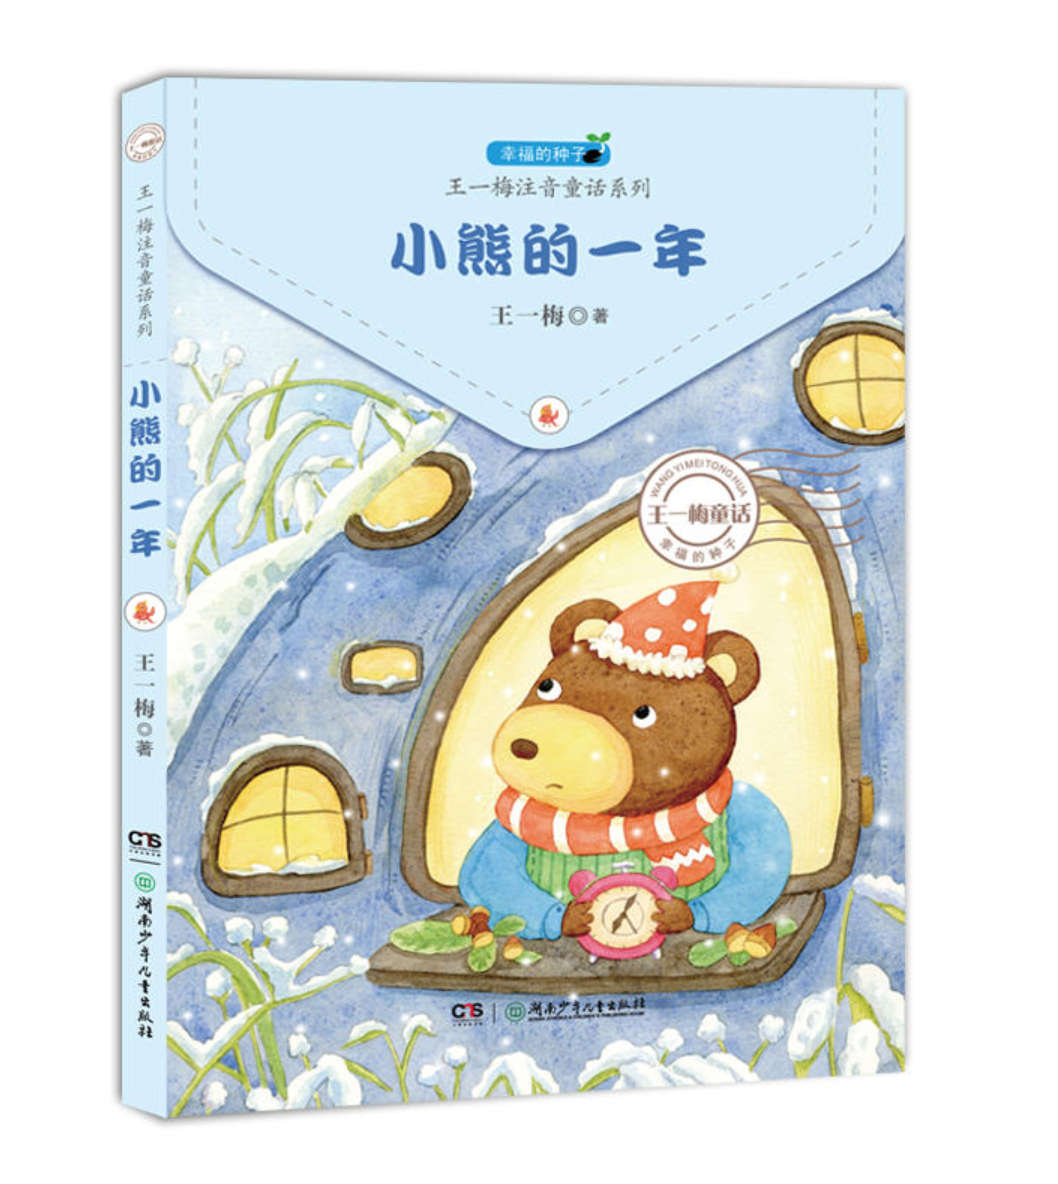 王一梅童书《小熊的一年》封面与内插